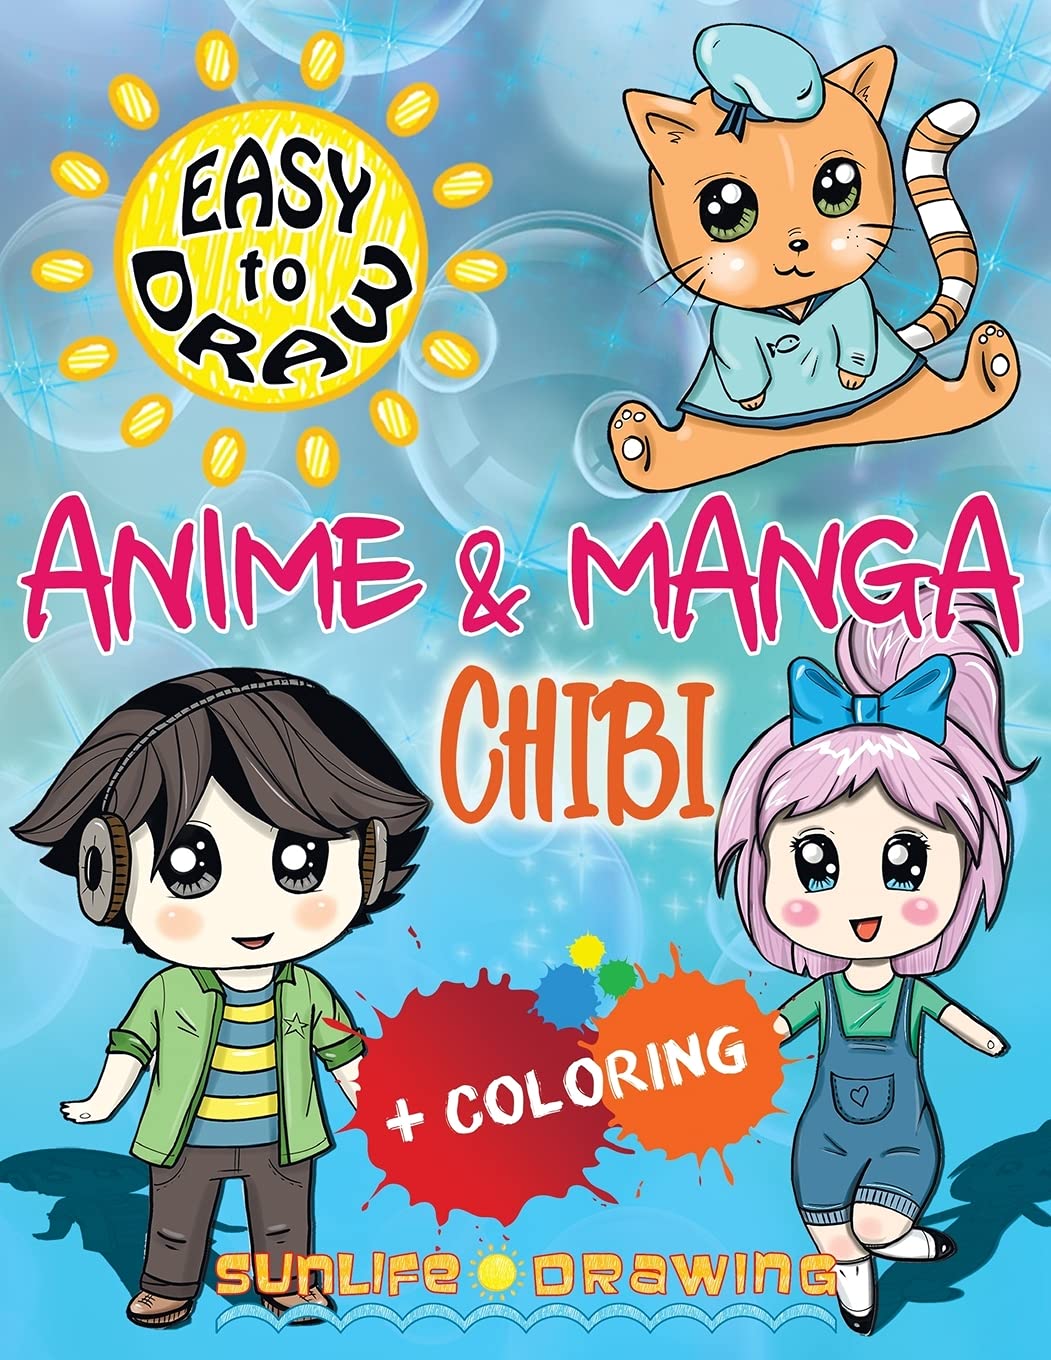 Chibi Cute Anime Girl Images - Free Download on Freepik